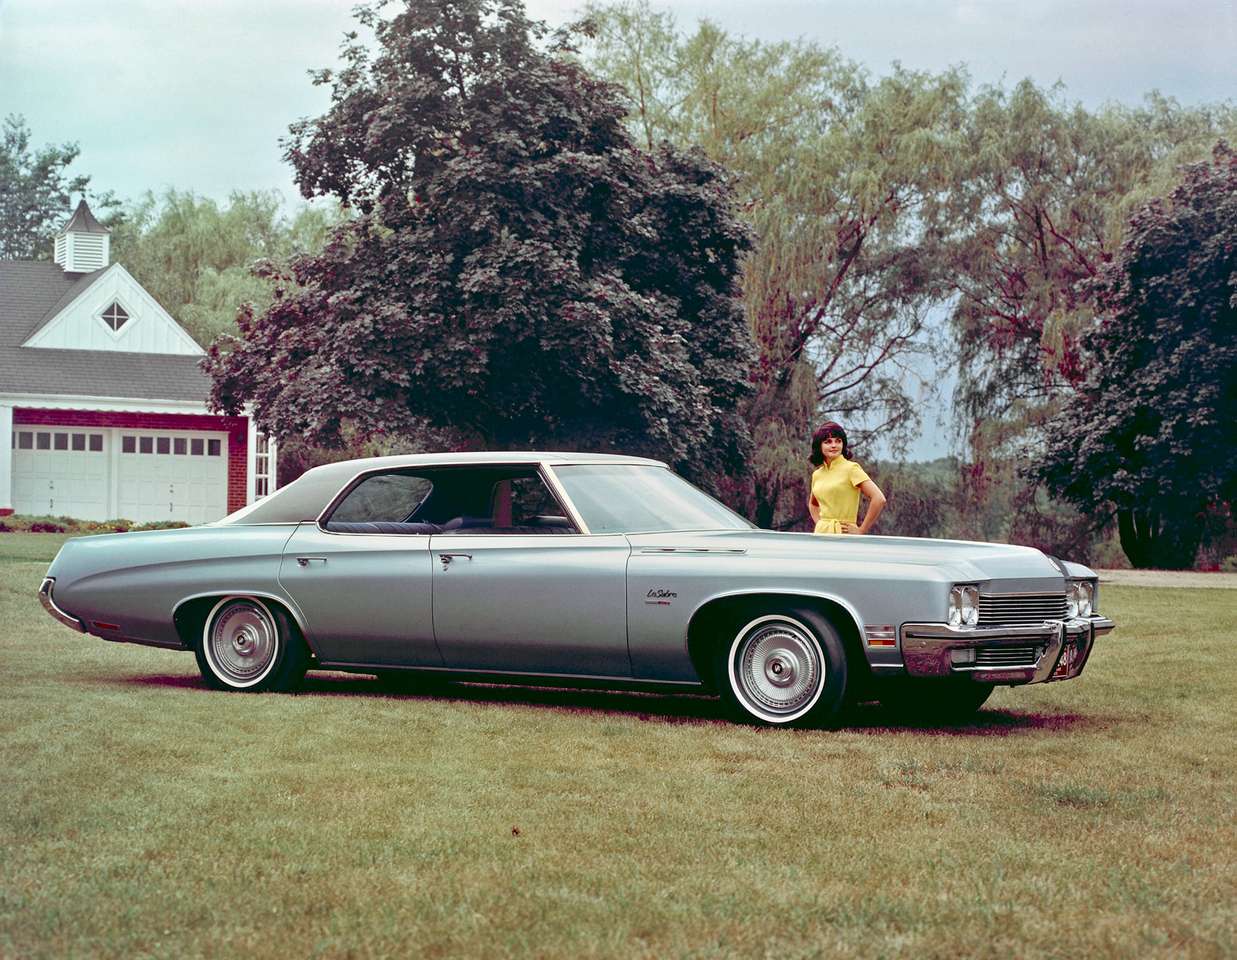 1972 Buick LeSabre Custom à toit rigide 4 portes puzzle en ligne